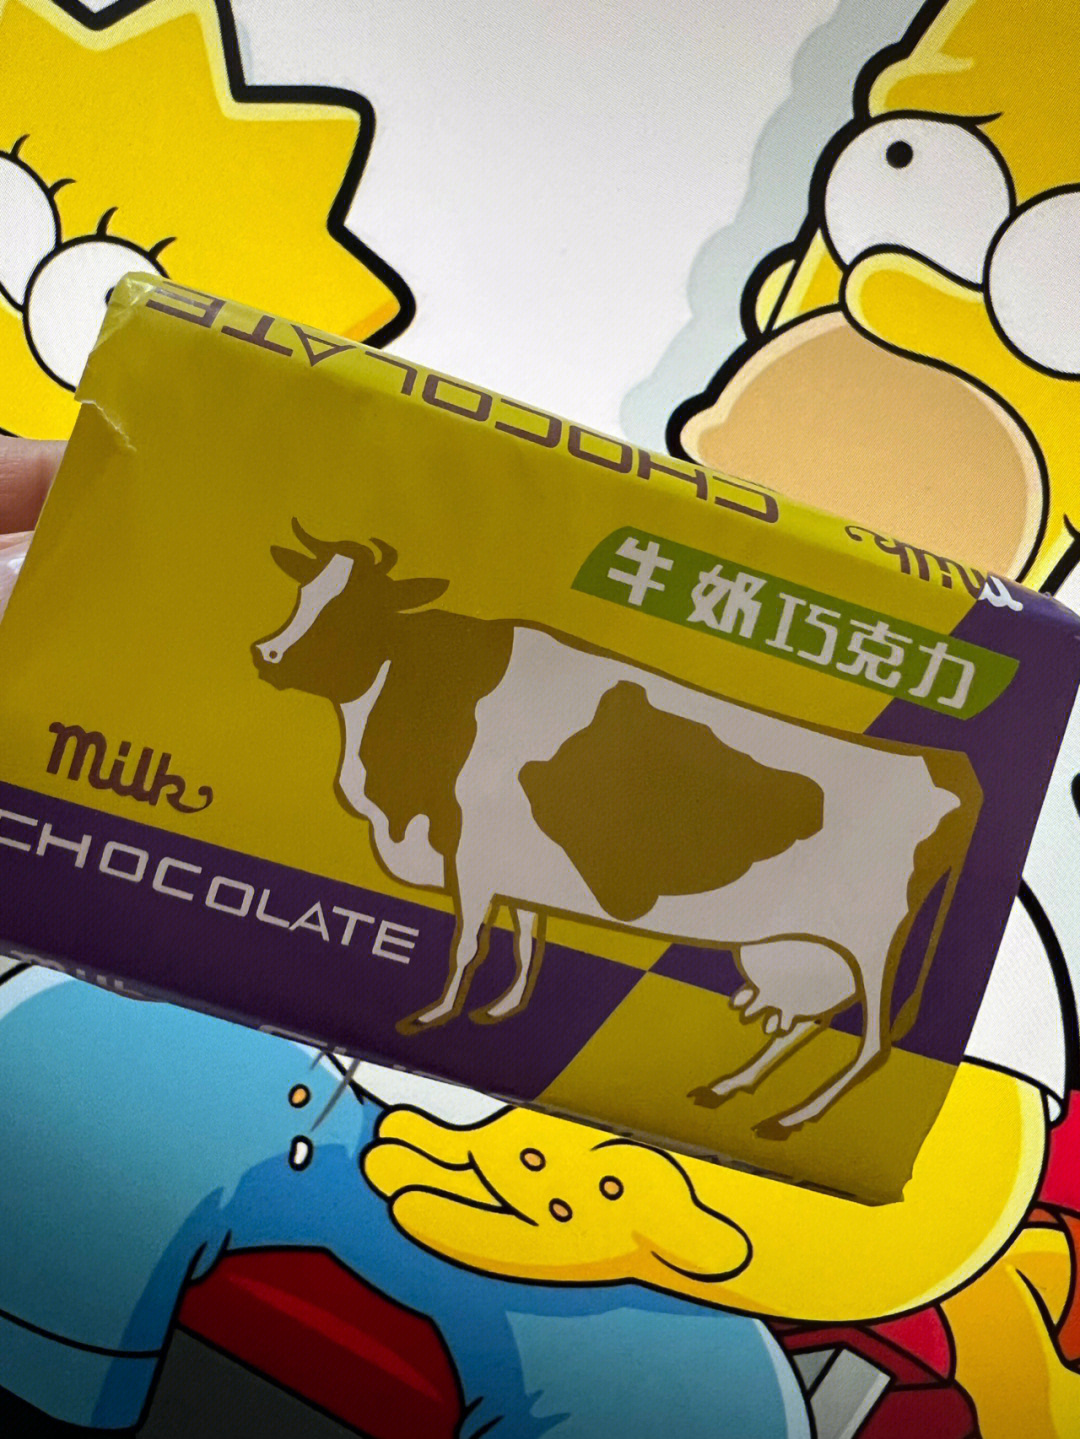 很好吃的国产牛奶巧克力